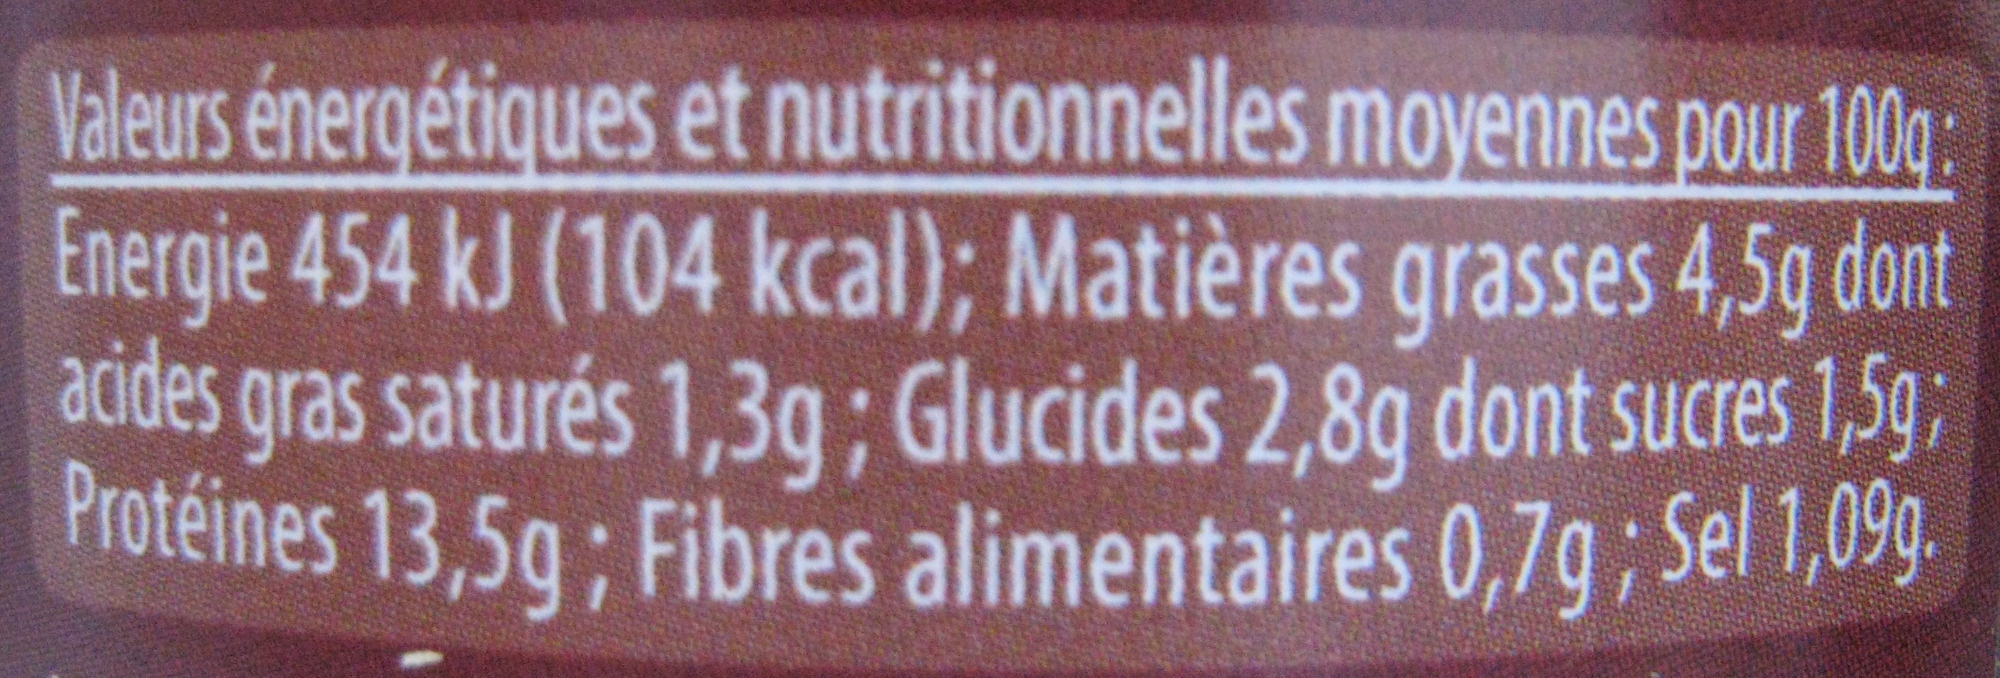 Coq au vin de Cahors Jean Larnaudie - Nutrition facts - fr